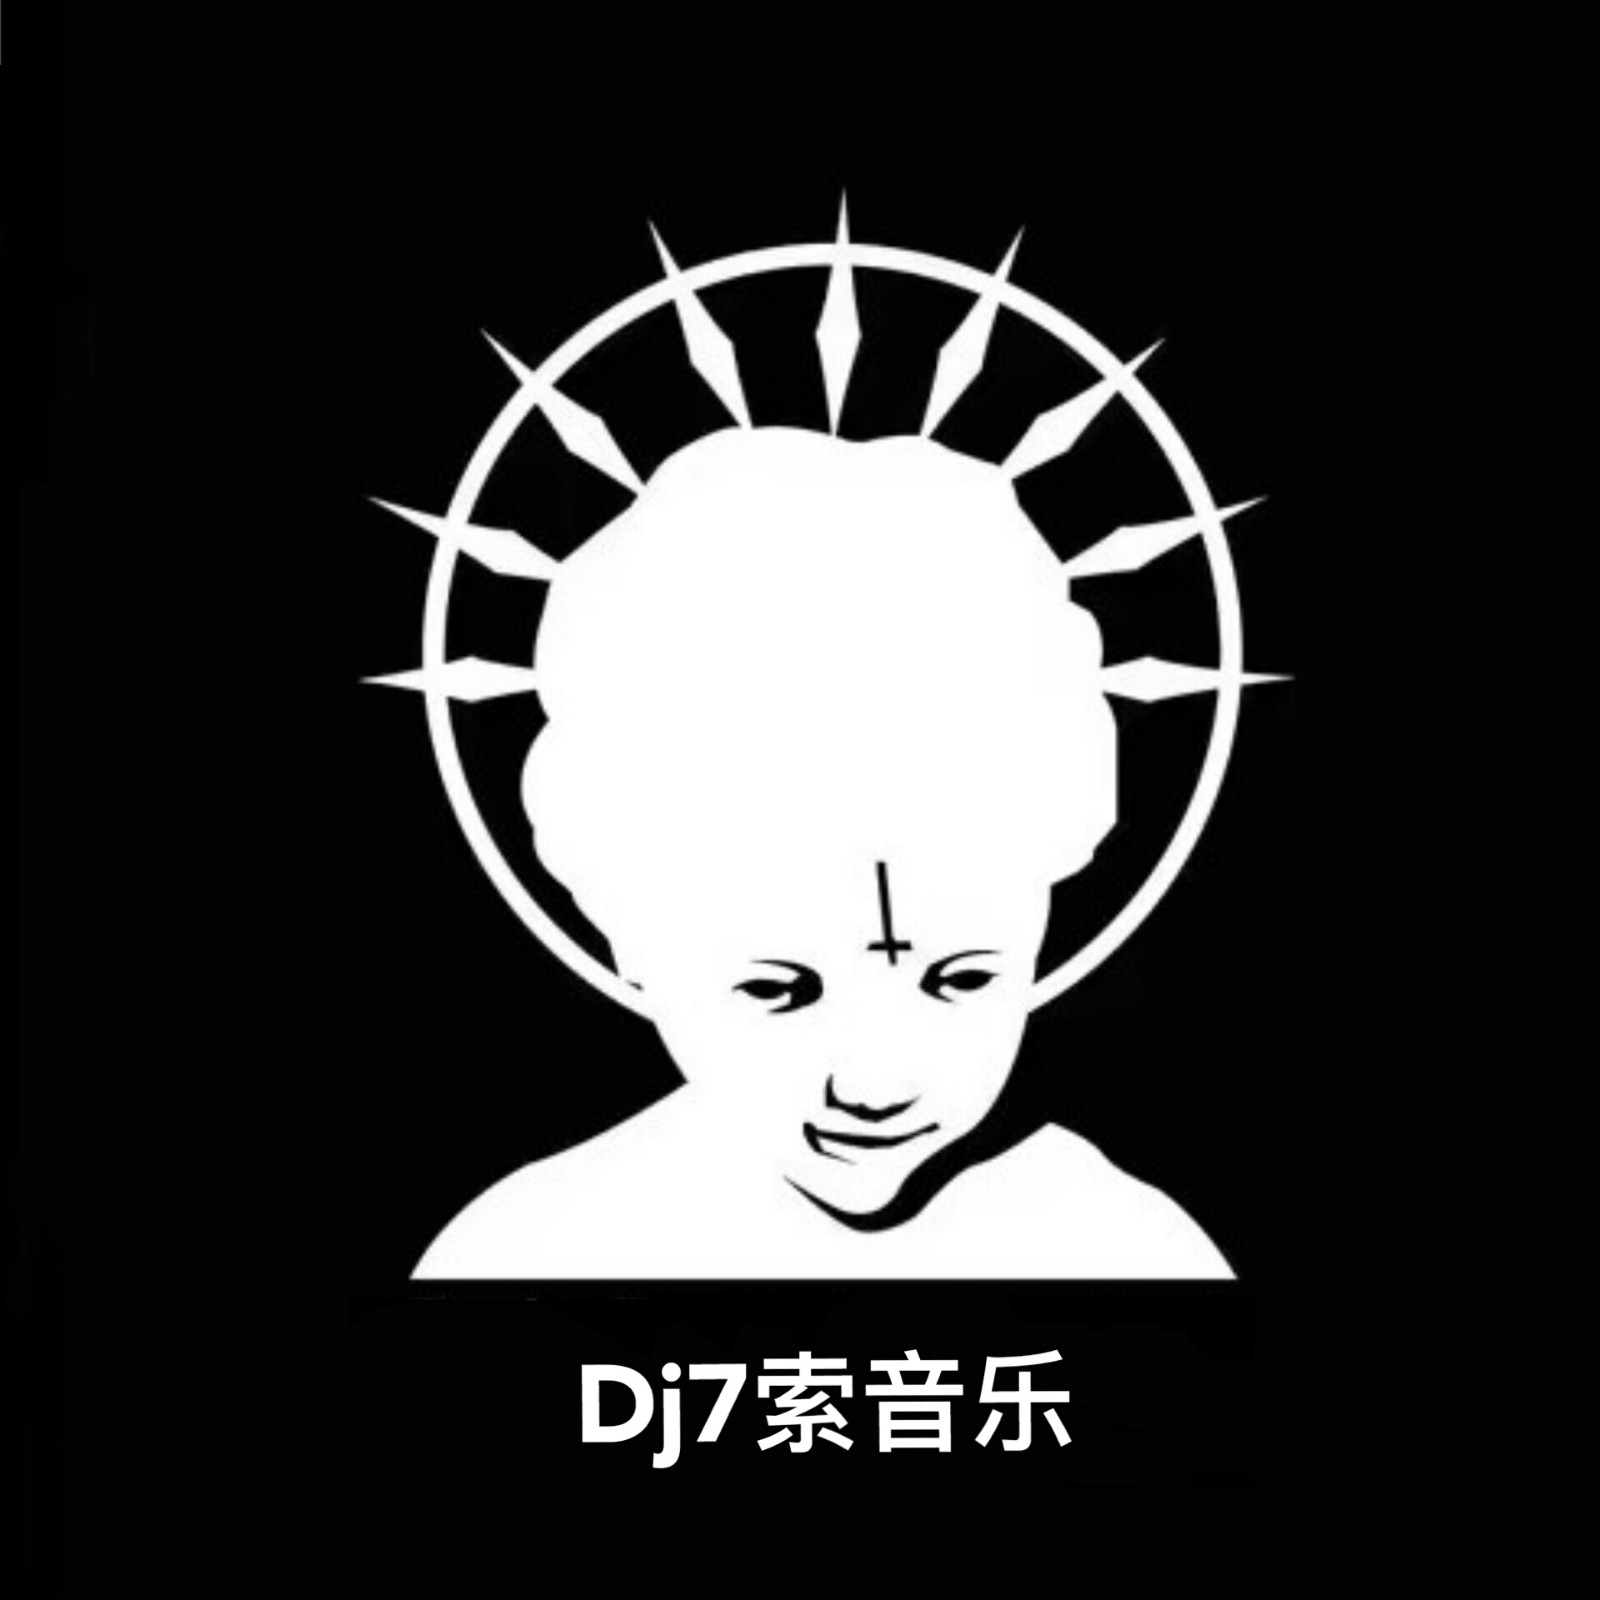 DJ7索 Remix